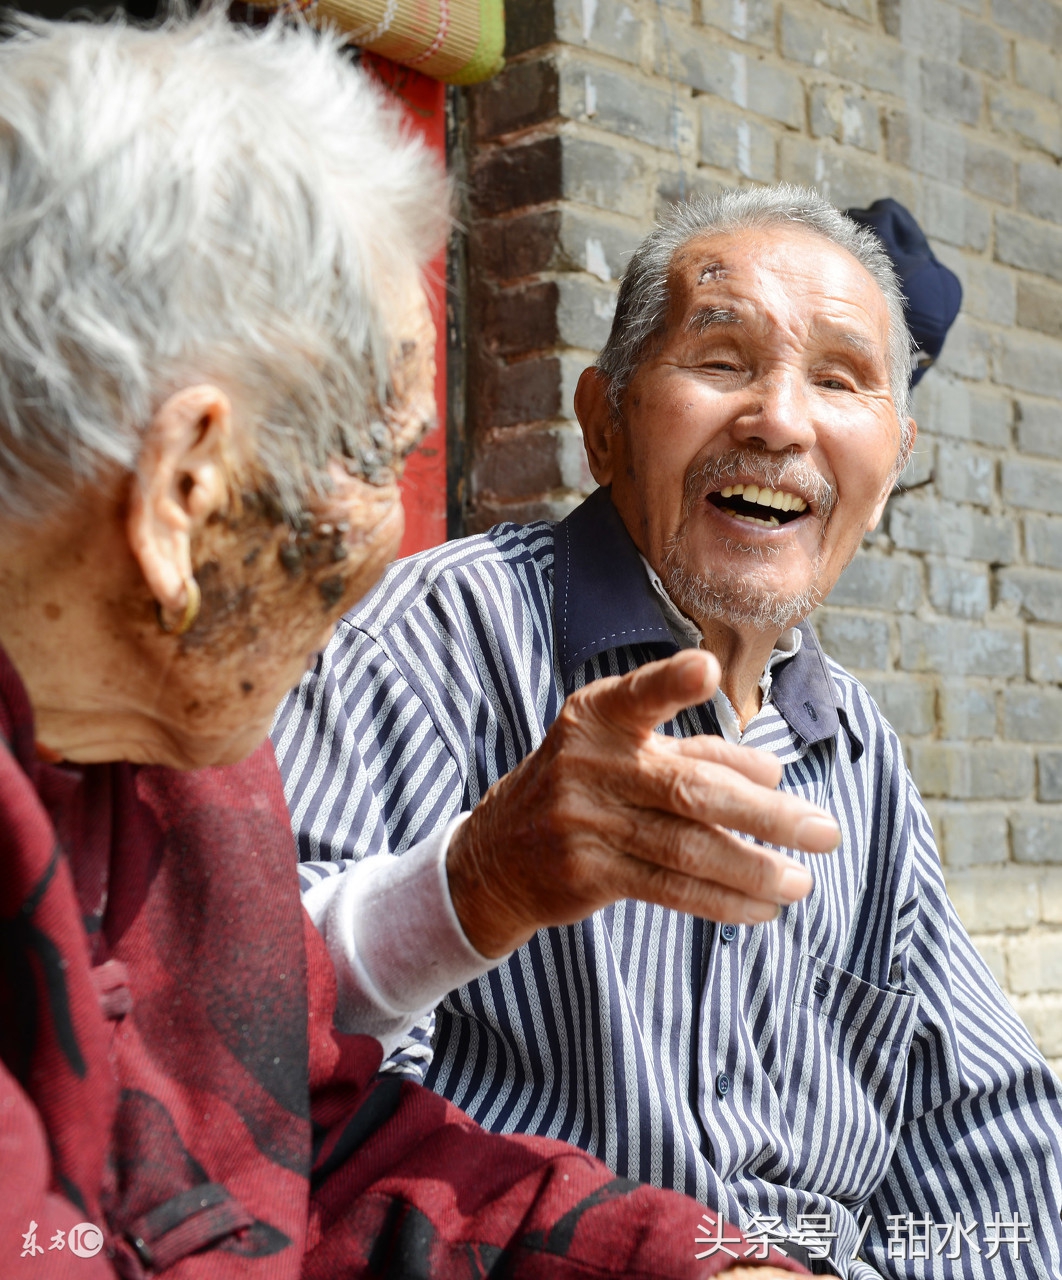 百岁夫妻两人年龄相加高达213岁 每天喝点